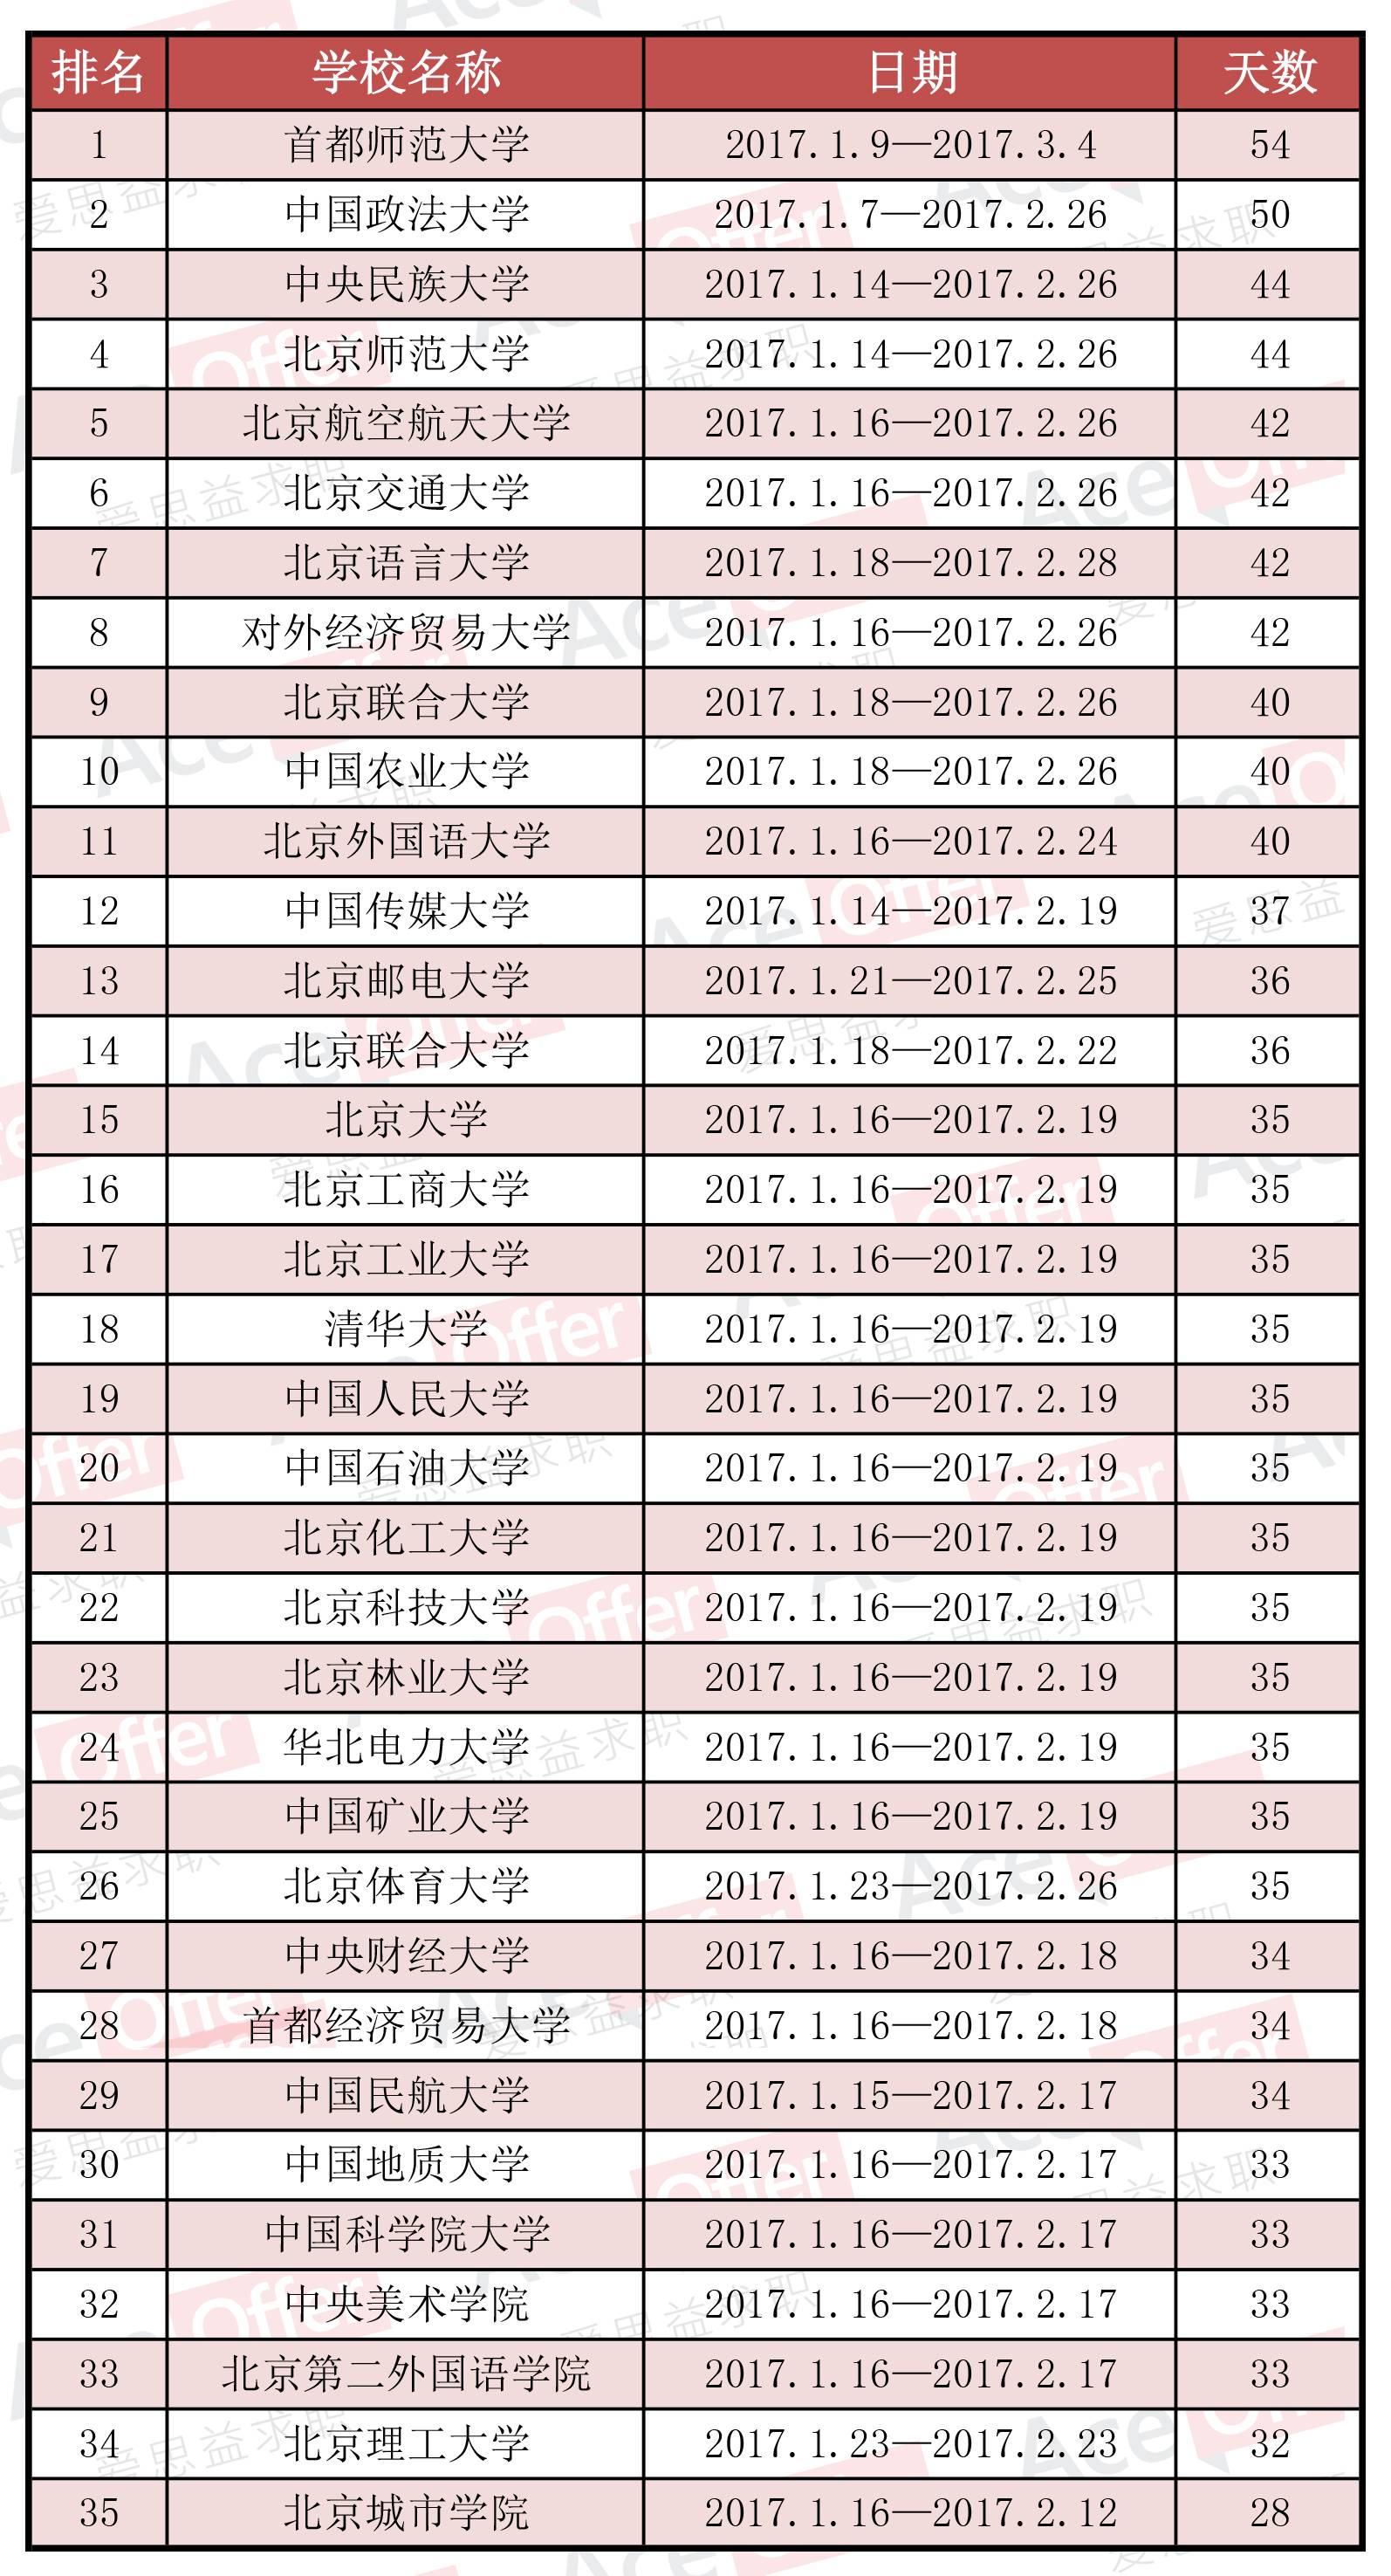 注意啦!北京中小学明年1月21日放寒假!35所大